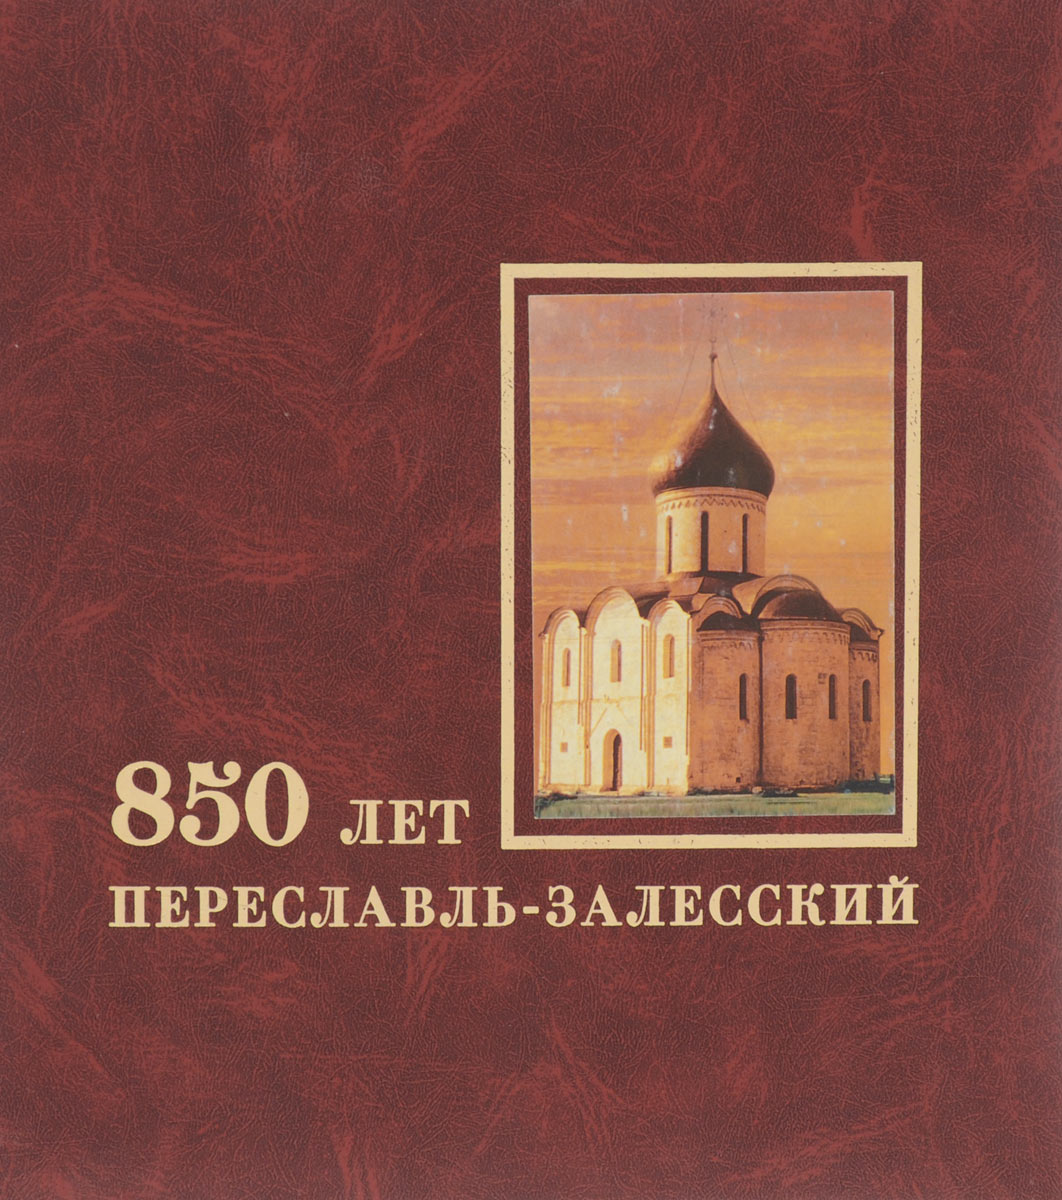 850 лет. Переславль-Залесский